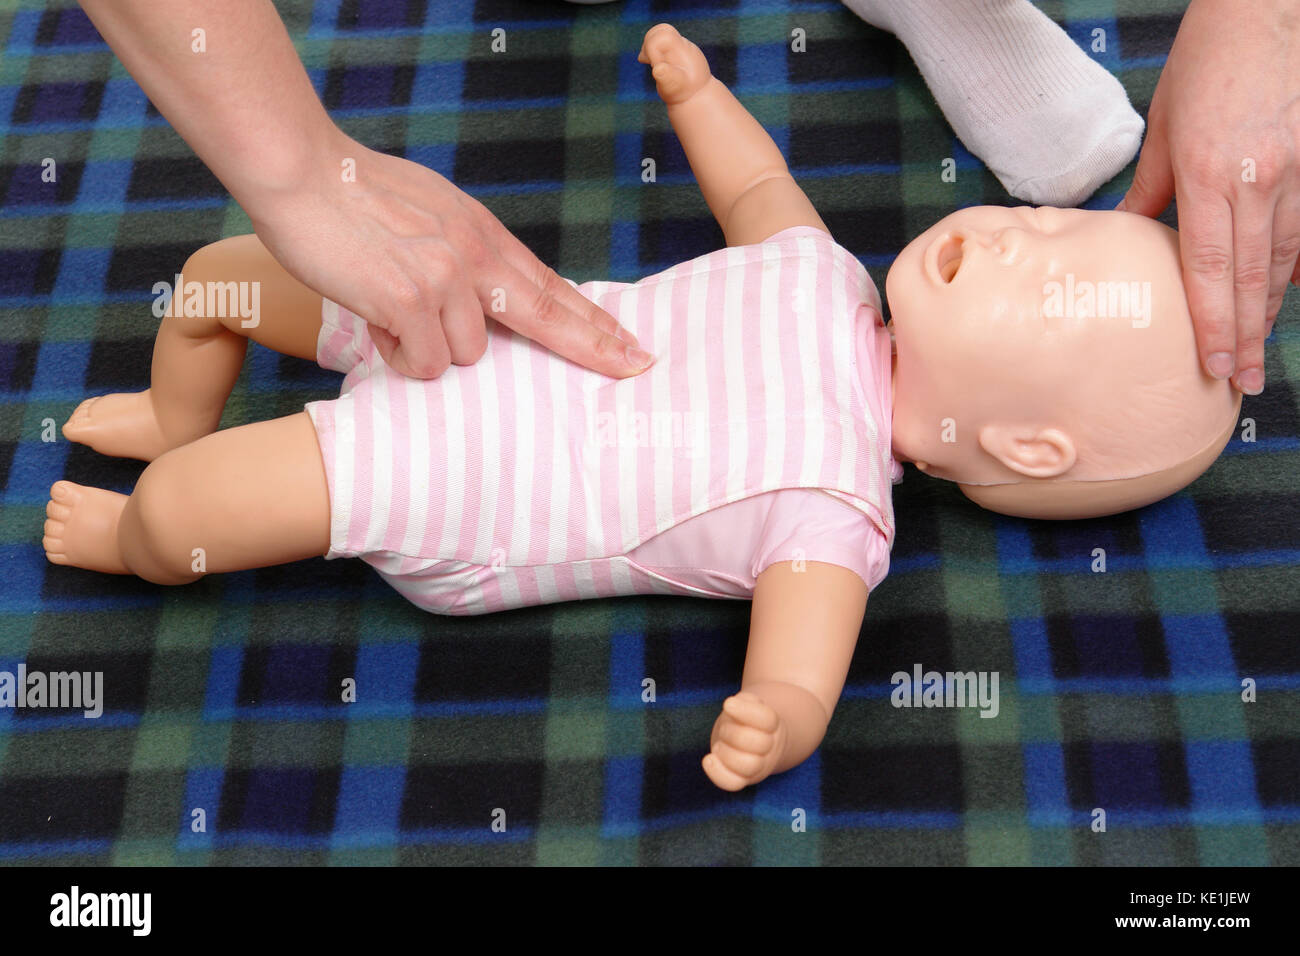 Baby dummy Erste Hilfe demonstration Serie - Erste Hilfe Ausbilder demonstriert, wie Kleinkinder leben Funktionen zu prüfen. Stockfoto